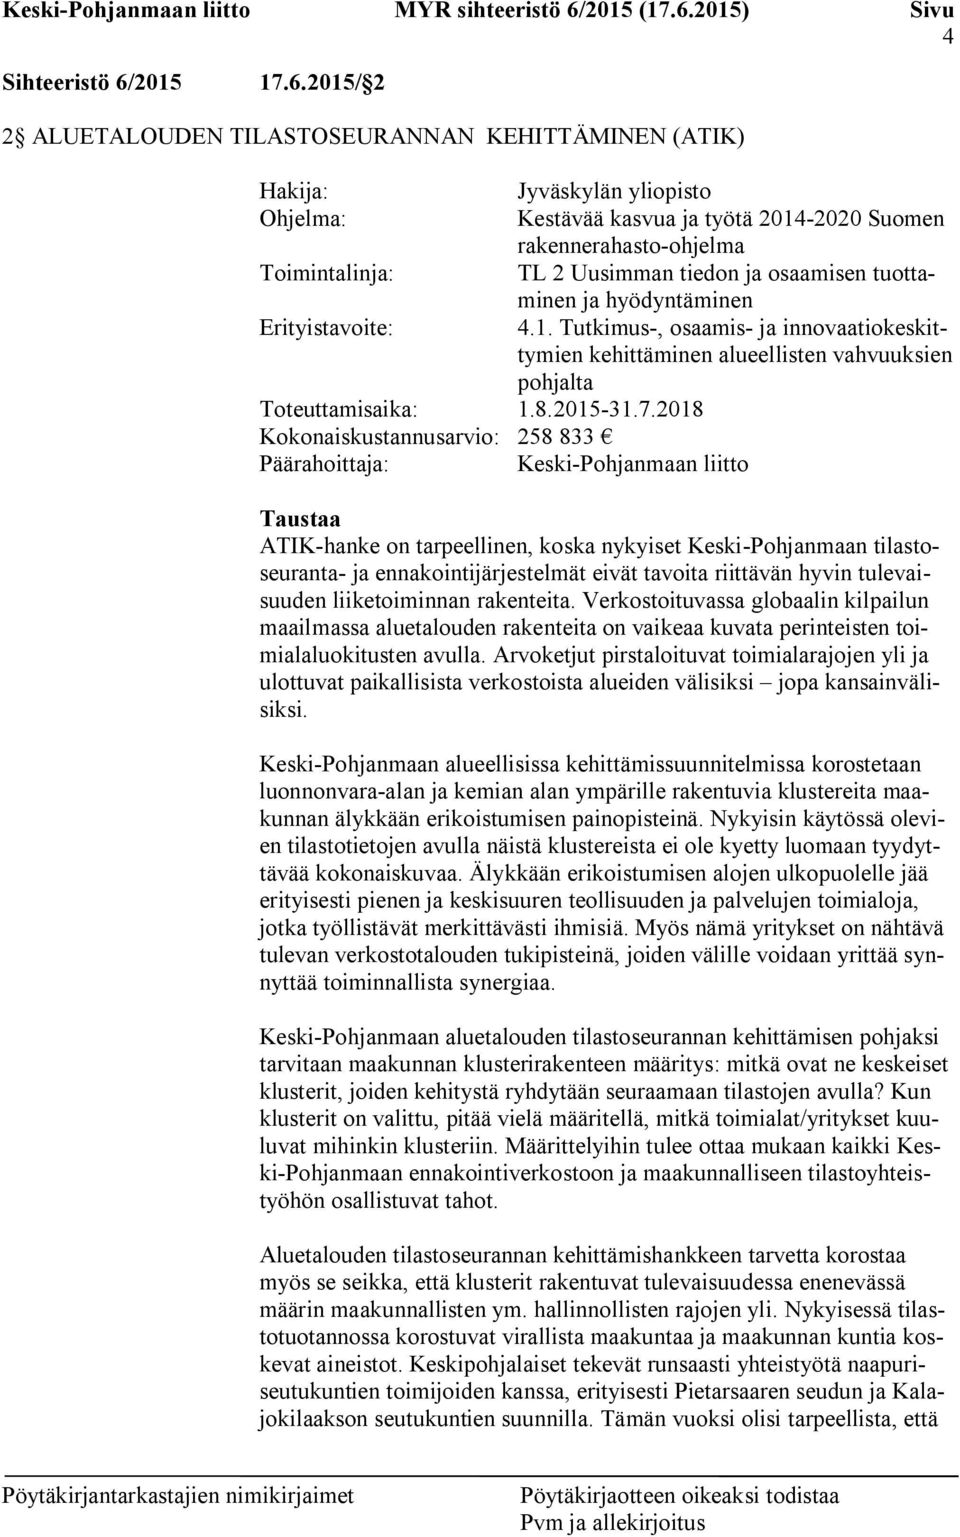 2015/ 2 2 ALUETALOUDEN TILASTOSEURANNAN KEHITTÄMINEN (ATIK) Hakija: Jyväskylän yliopisto Ohjelma: Kestävää kasvua ja työtä 2014-2020 Suomen rakennerahasto-ohjelma Toimintalinja: TL 2 Uusimman tiedon